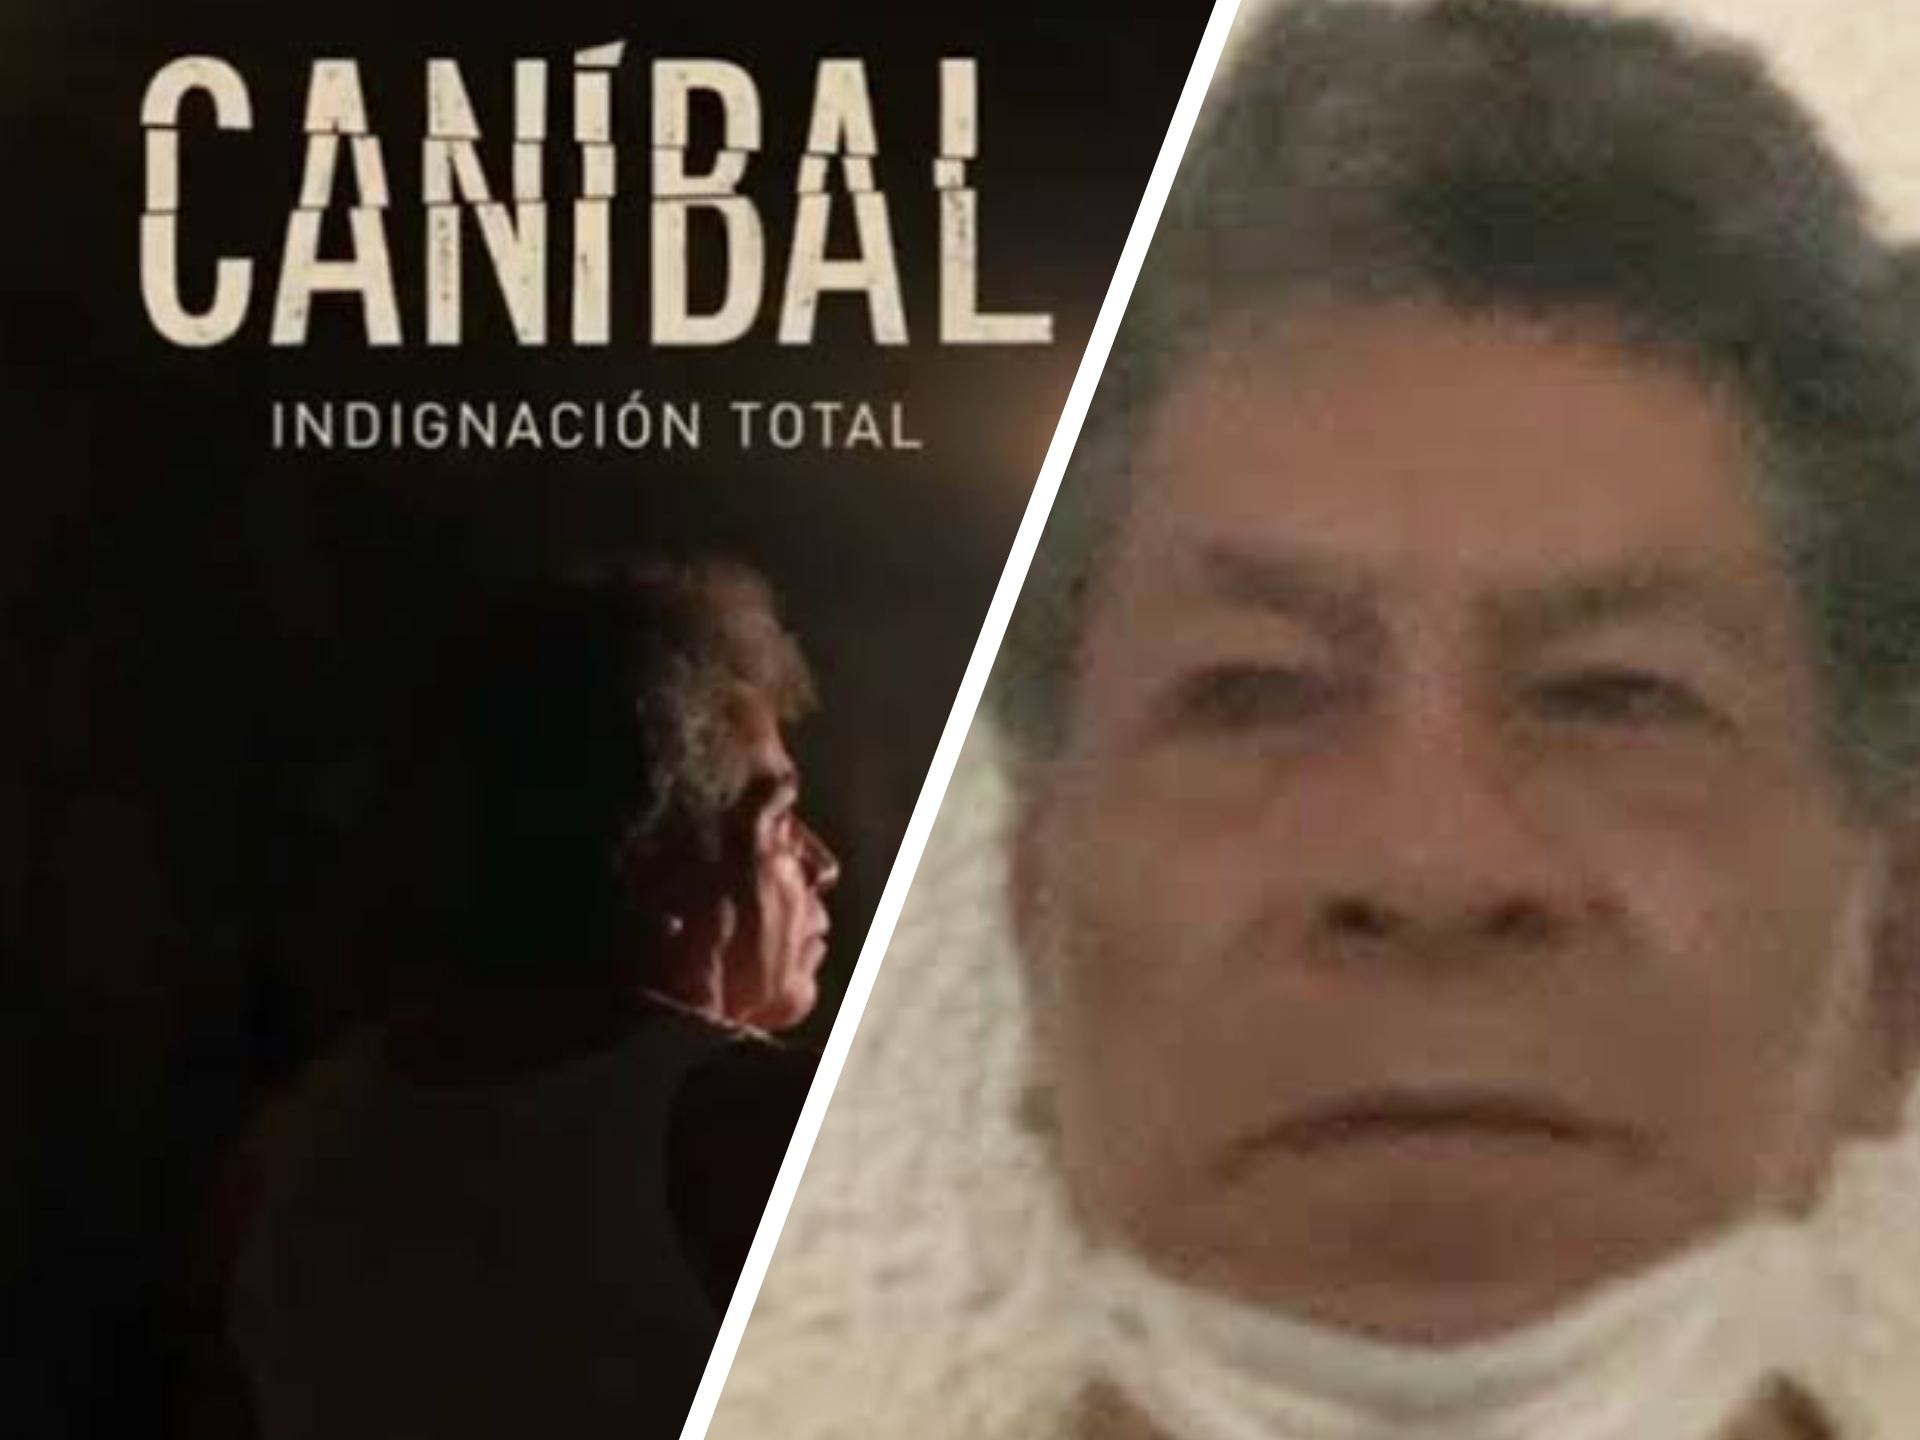 Serie sobre el "Caníbal de Atizapán" inicia su emisión en televisión nacional  #regionmx 